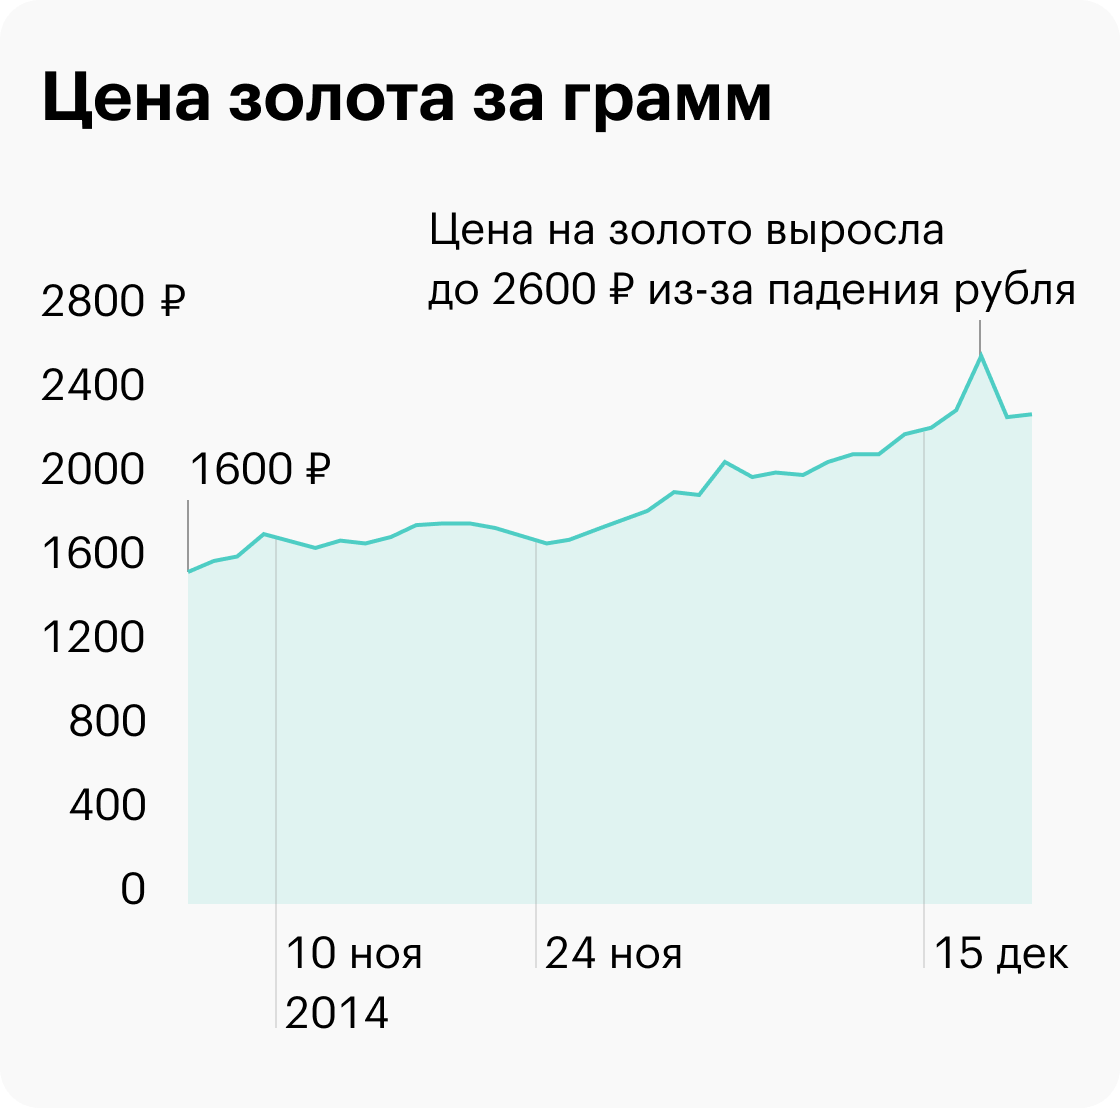 Так скакнула цена на золото у Центробанка из-за падения рубля в конце 2014 года. По данным «Инвестфандс»